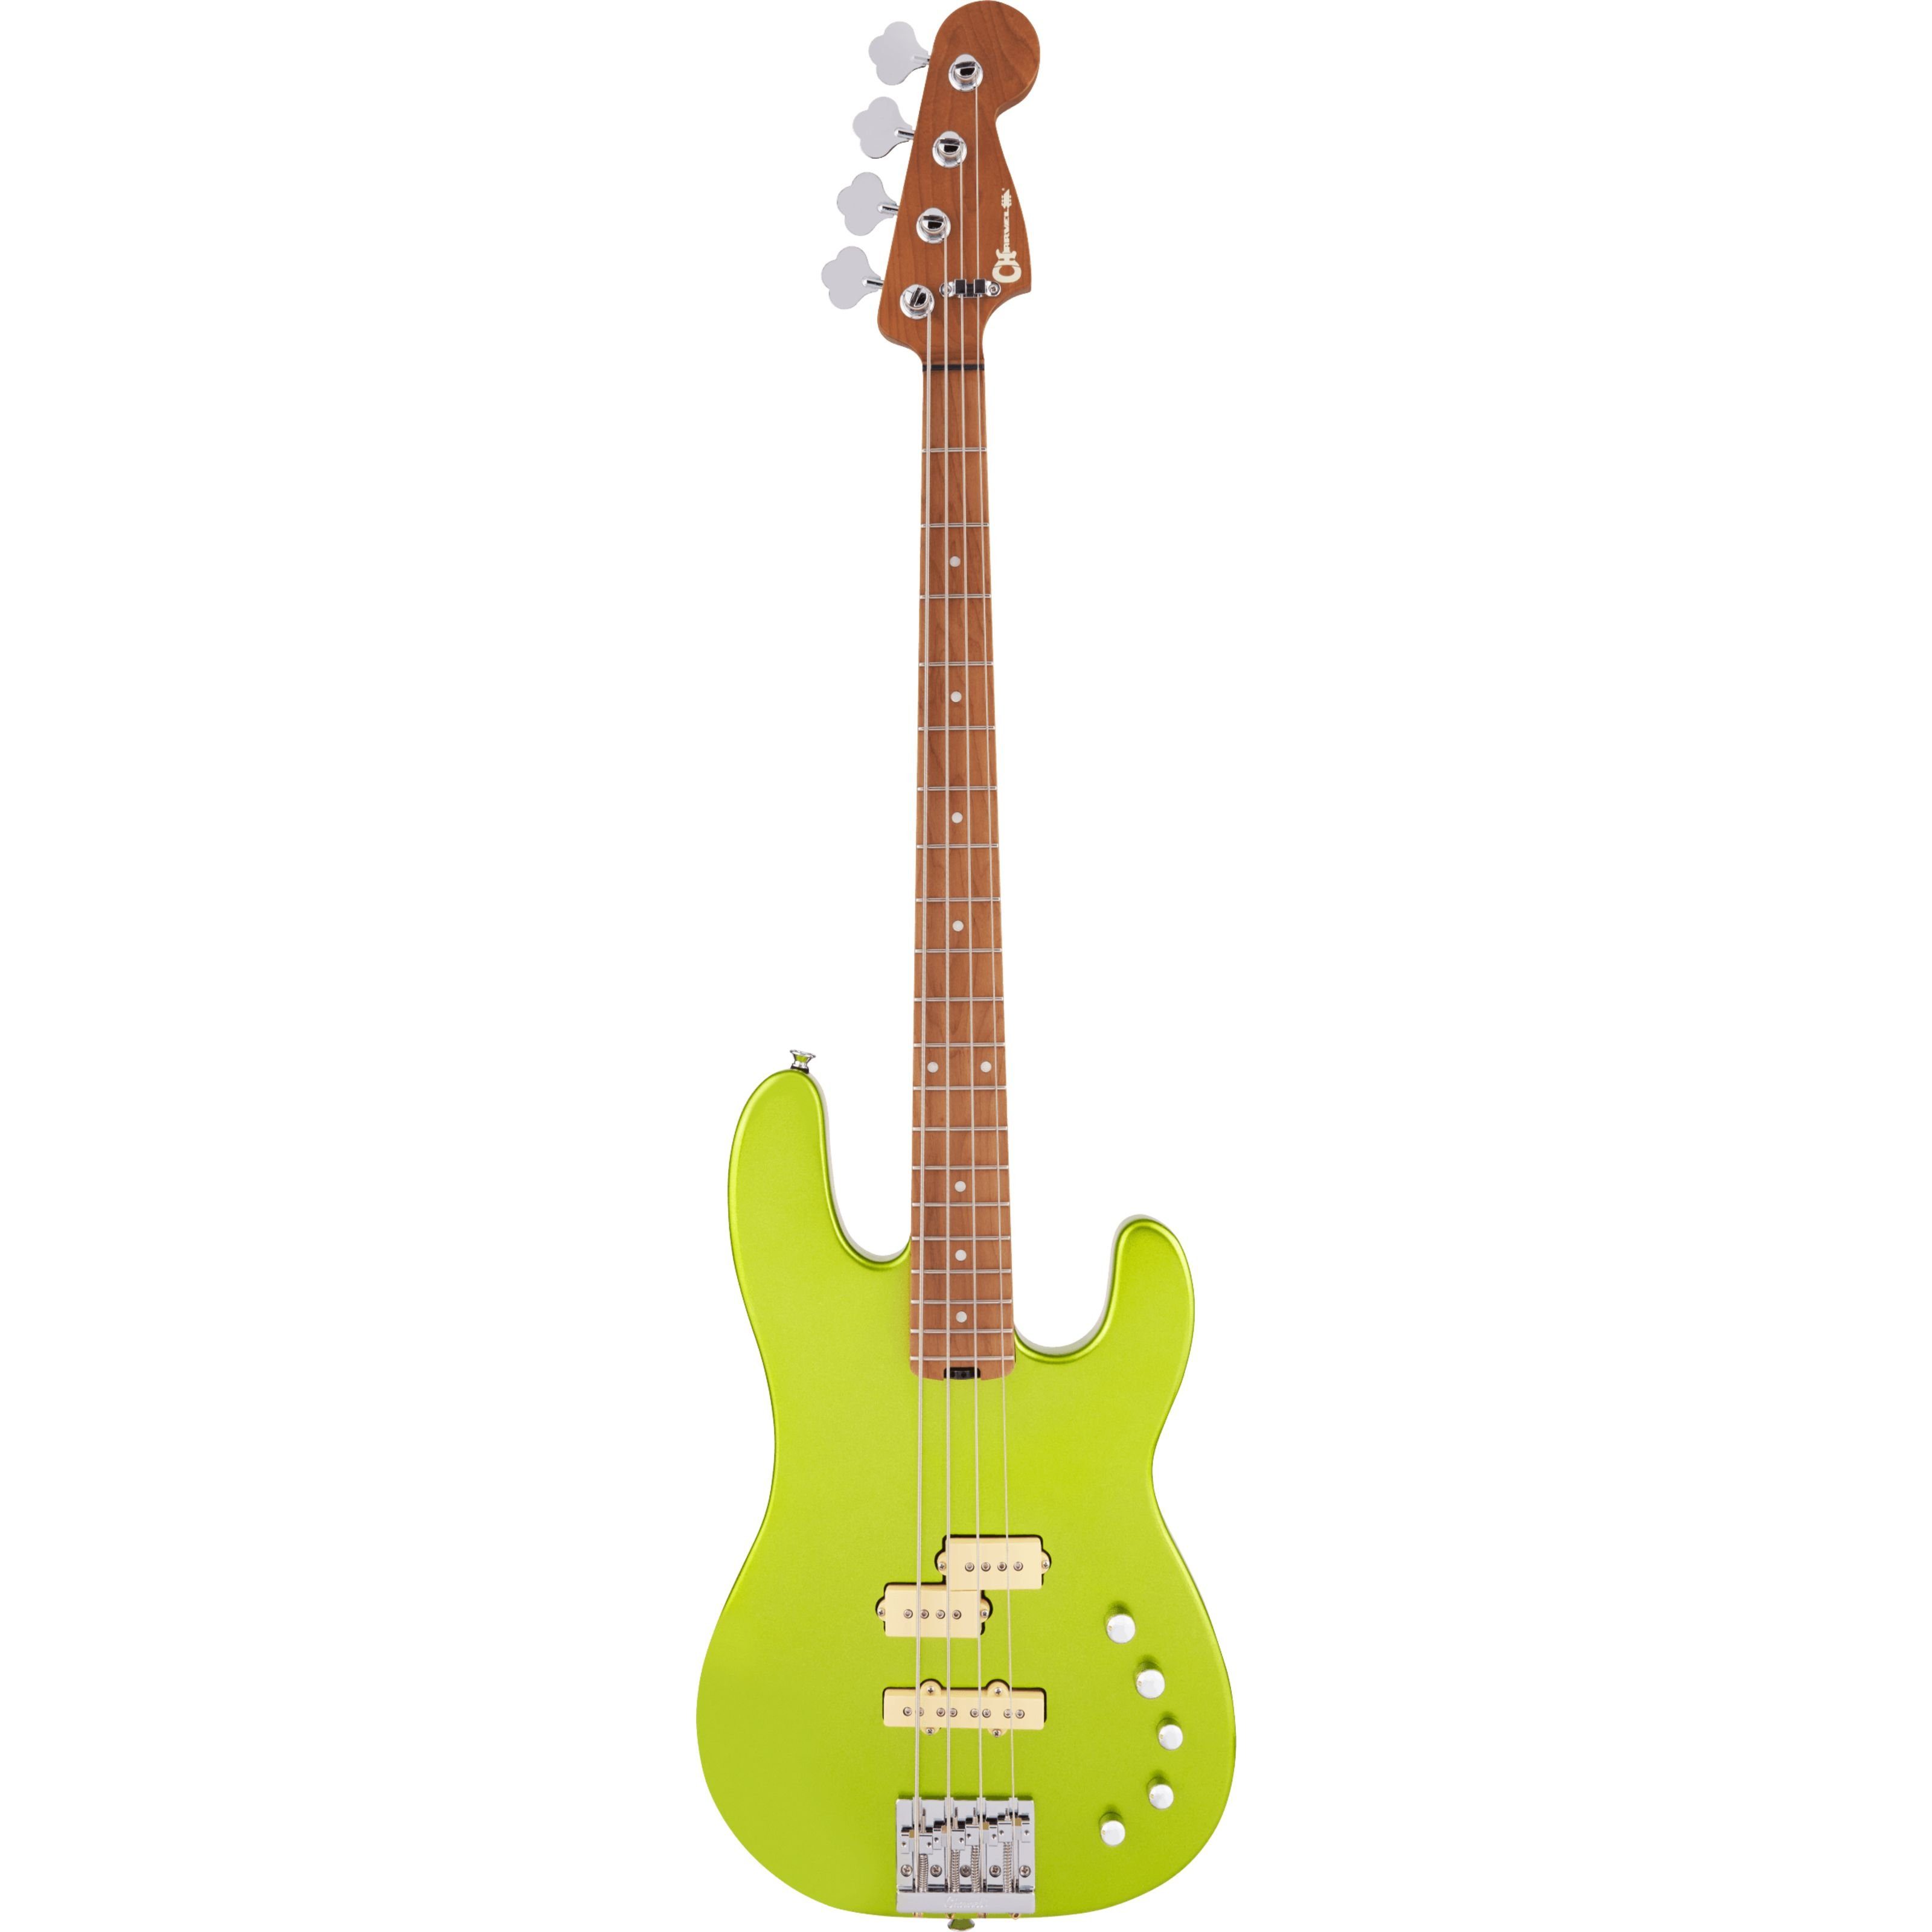 Charvel Spielzeug-Musikinstrument, Pro-Mod San Dimas Bass PJ IV CM Lime Green Metallic - E-Bass